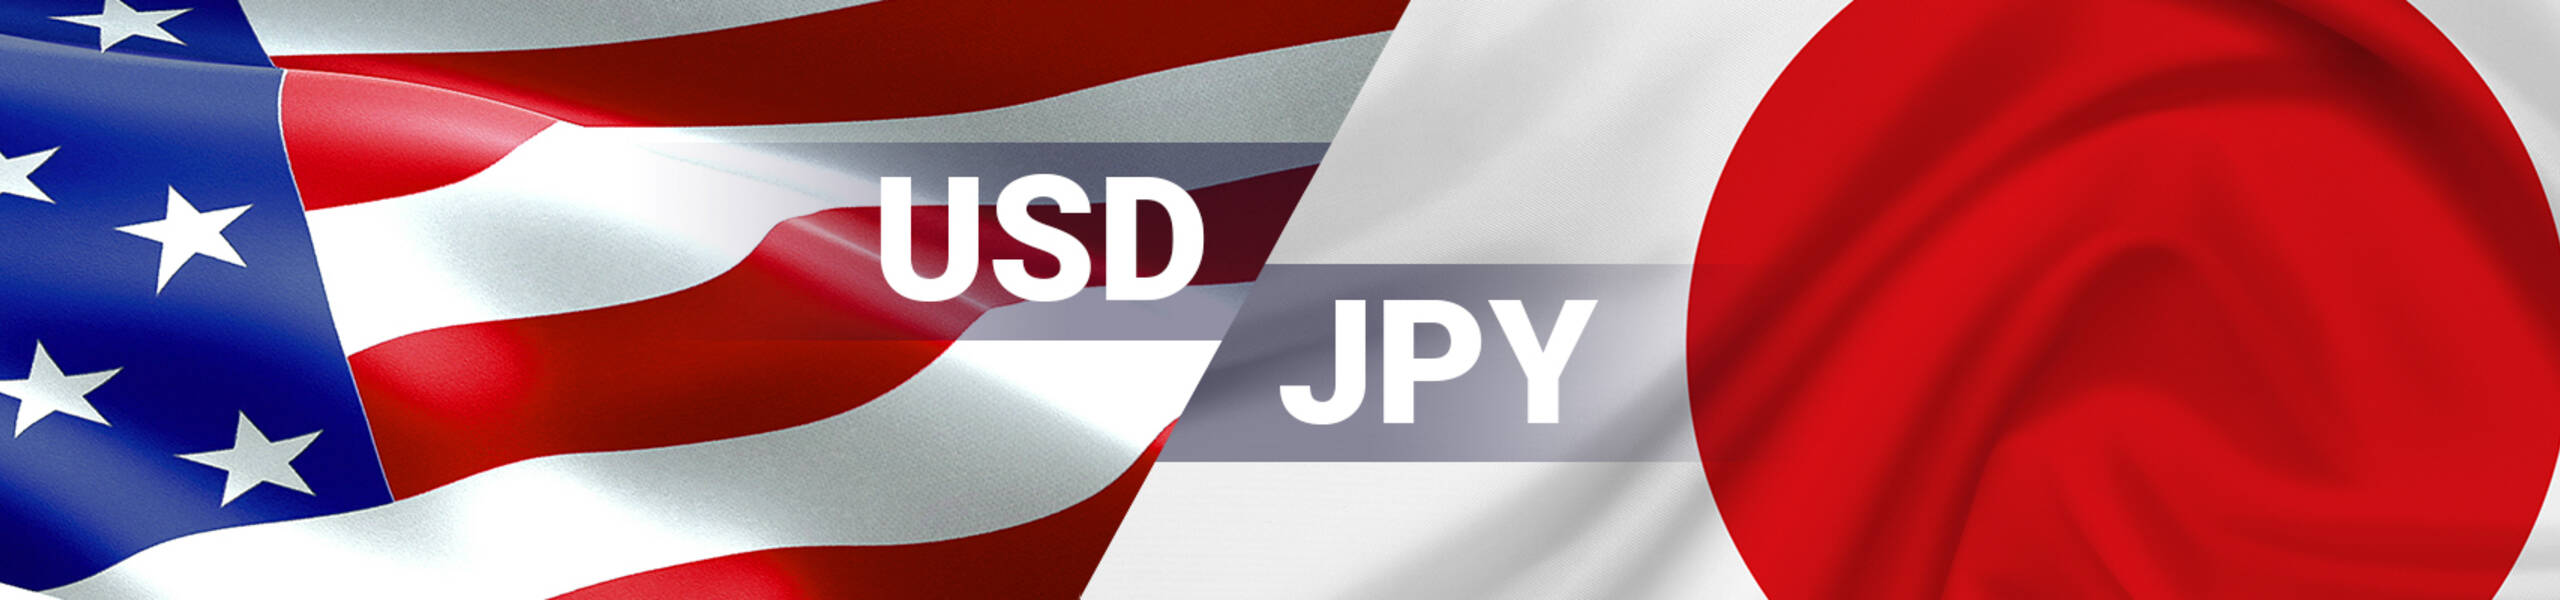 USD/JPY: ڈالر مزید گر سکتا ہے